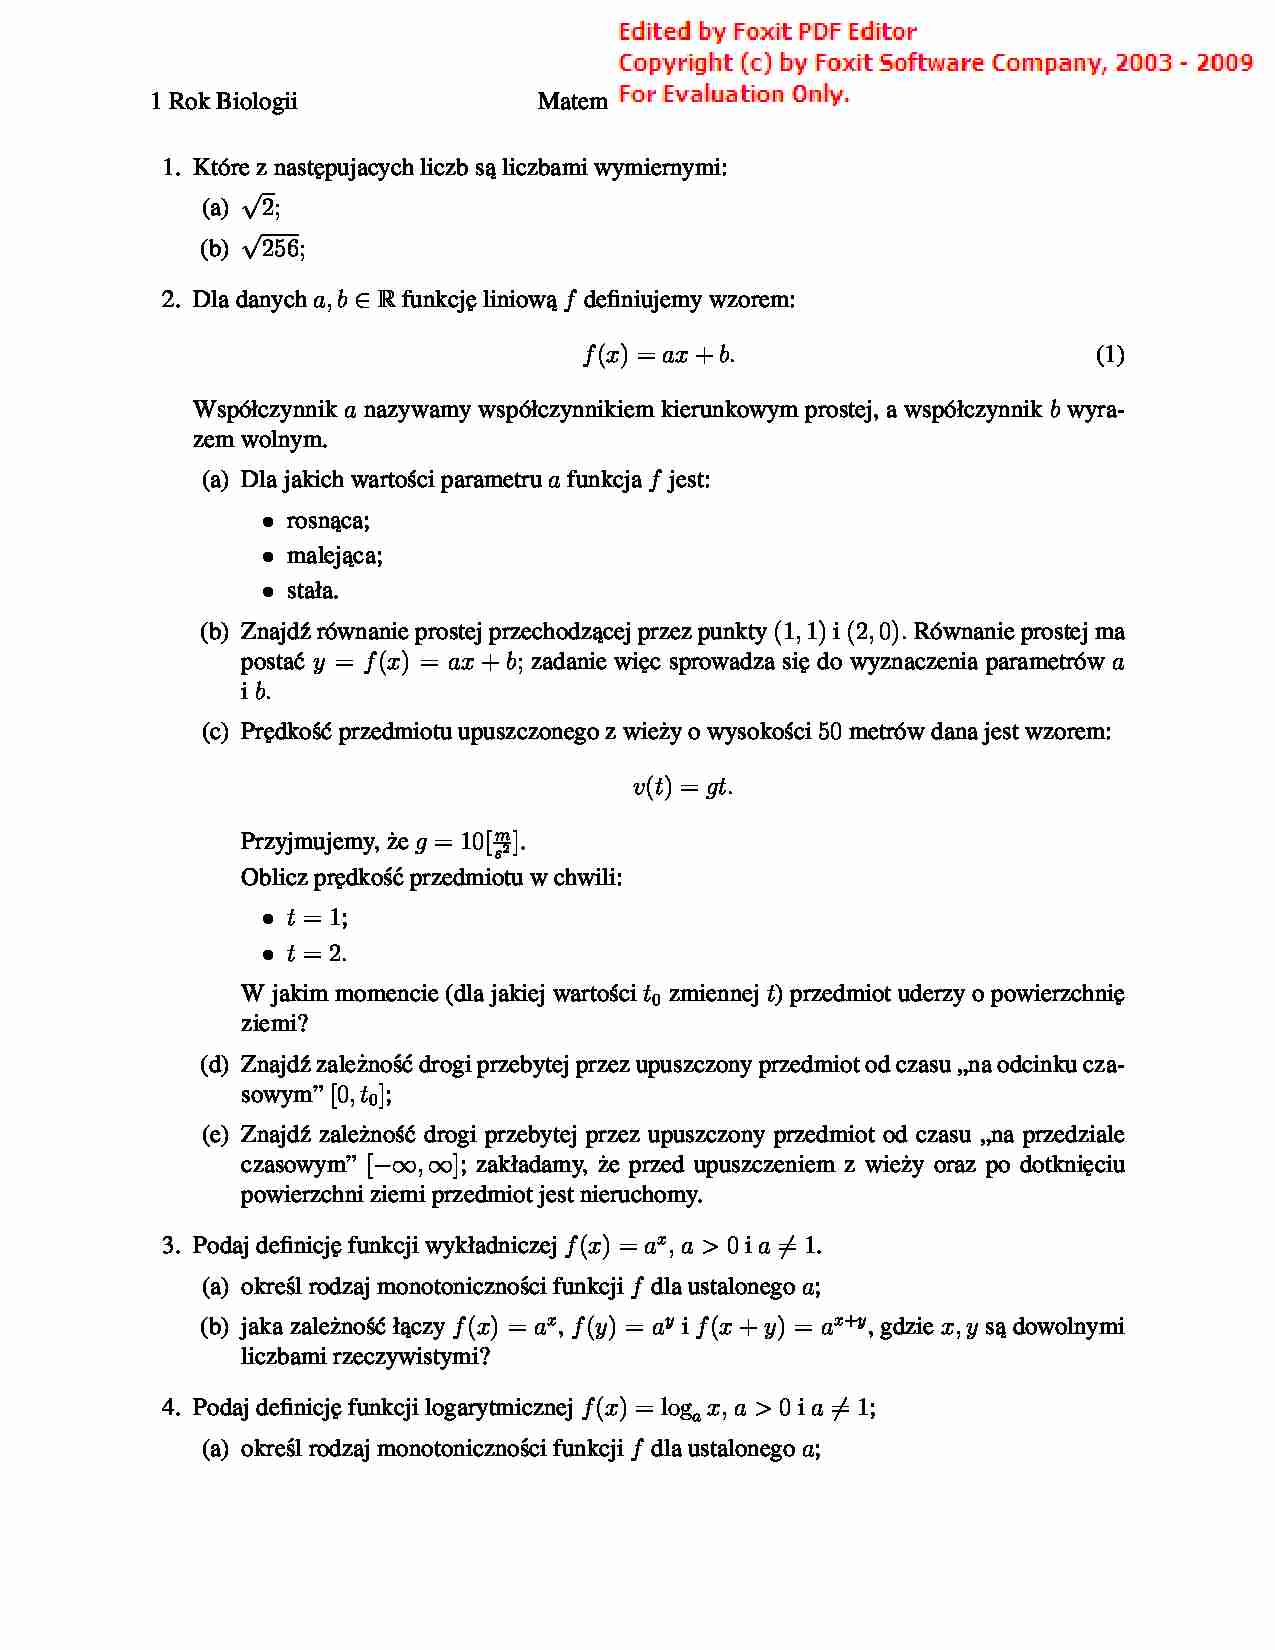 Matematyka - Lista zadań 1 - strona 1